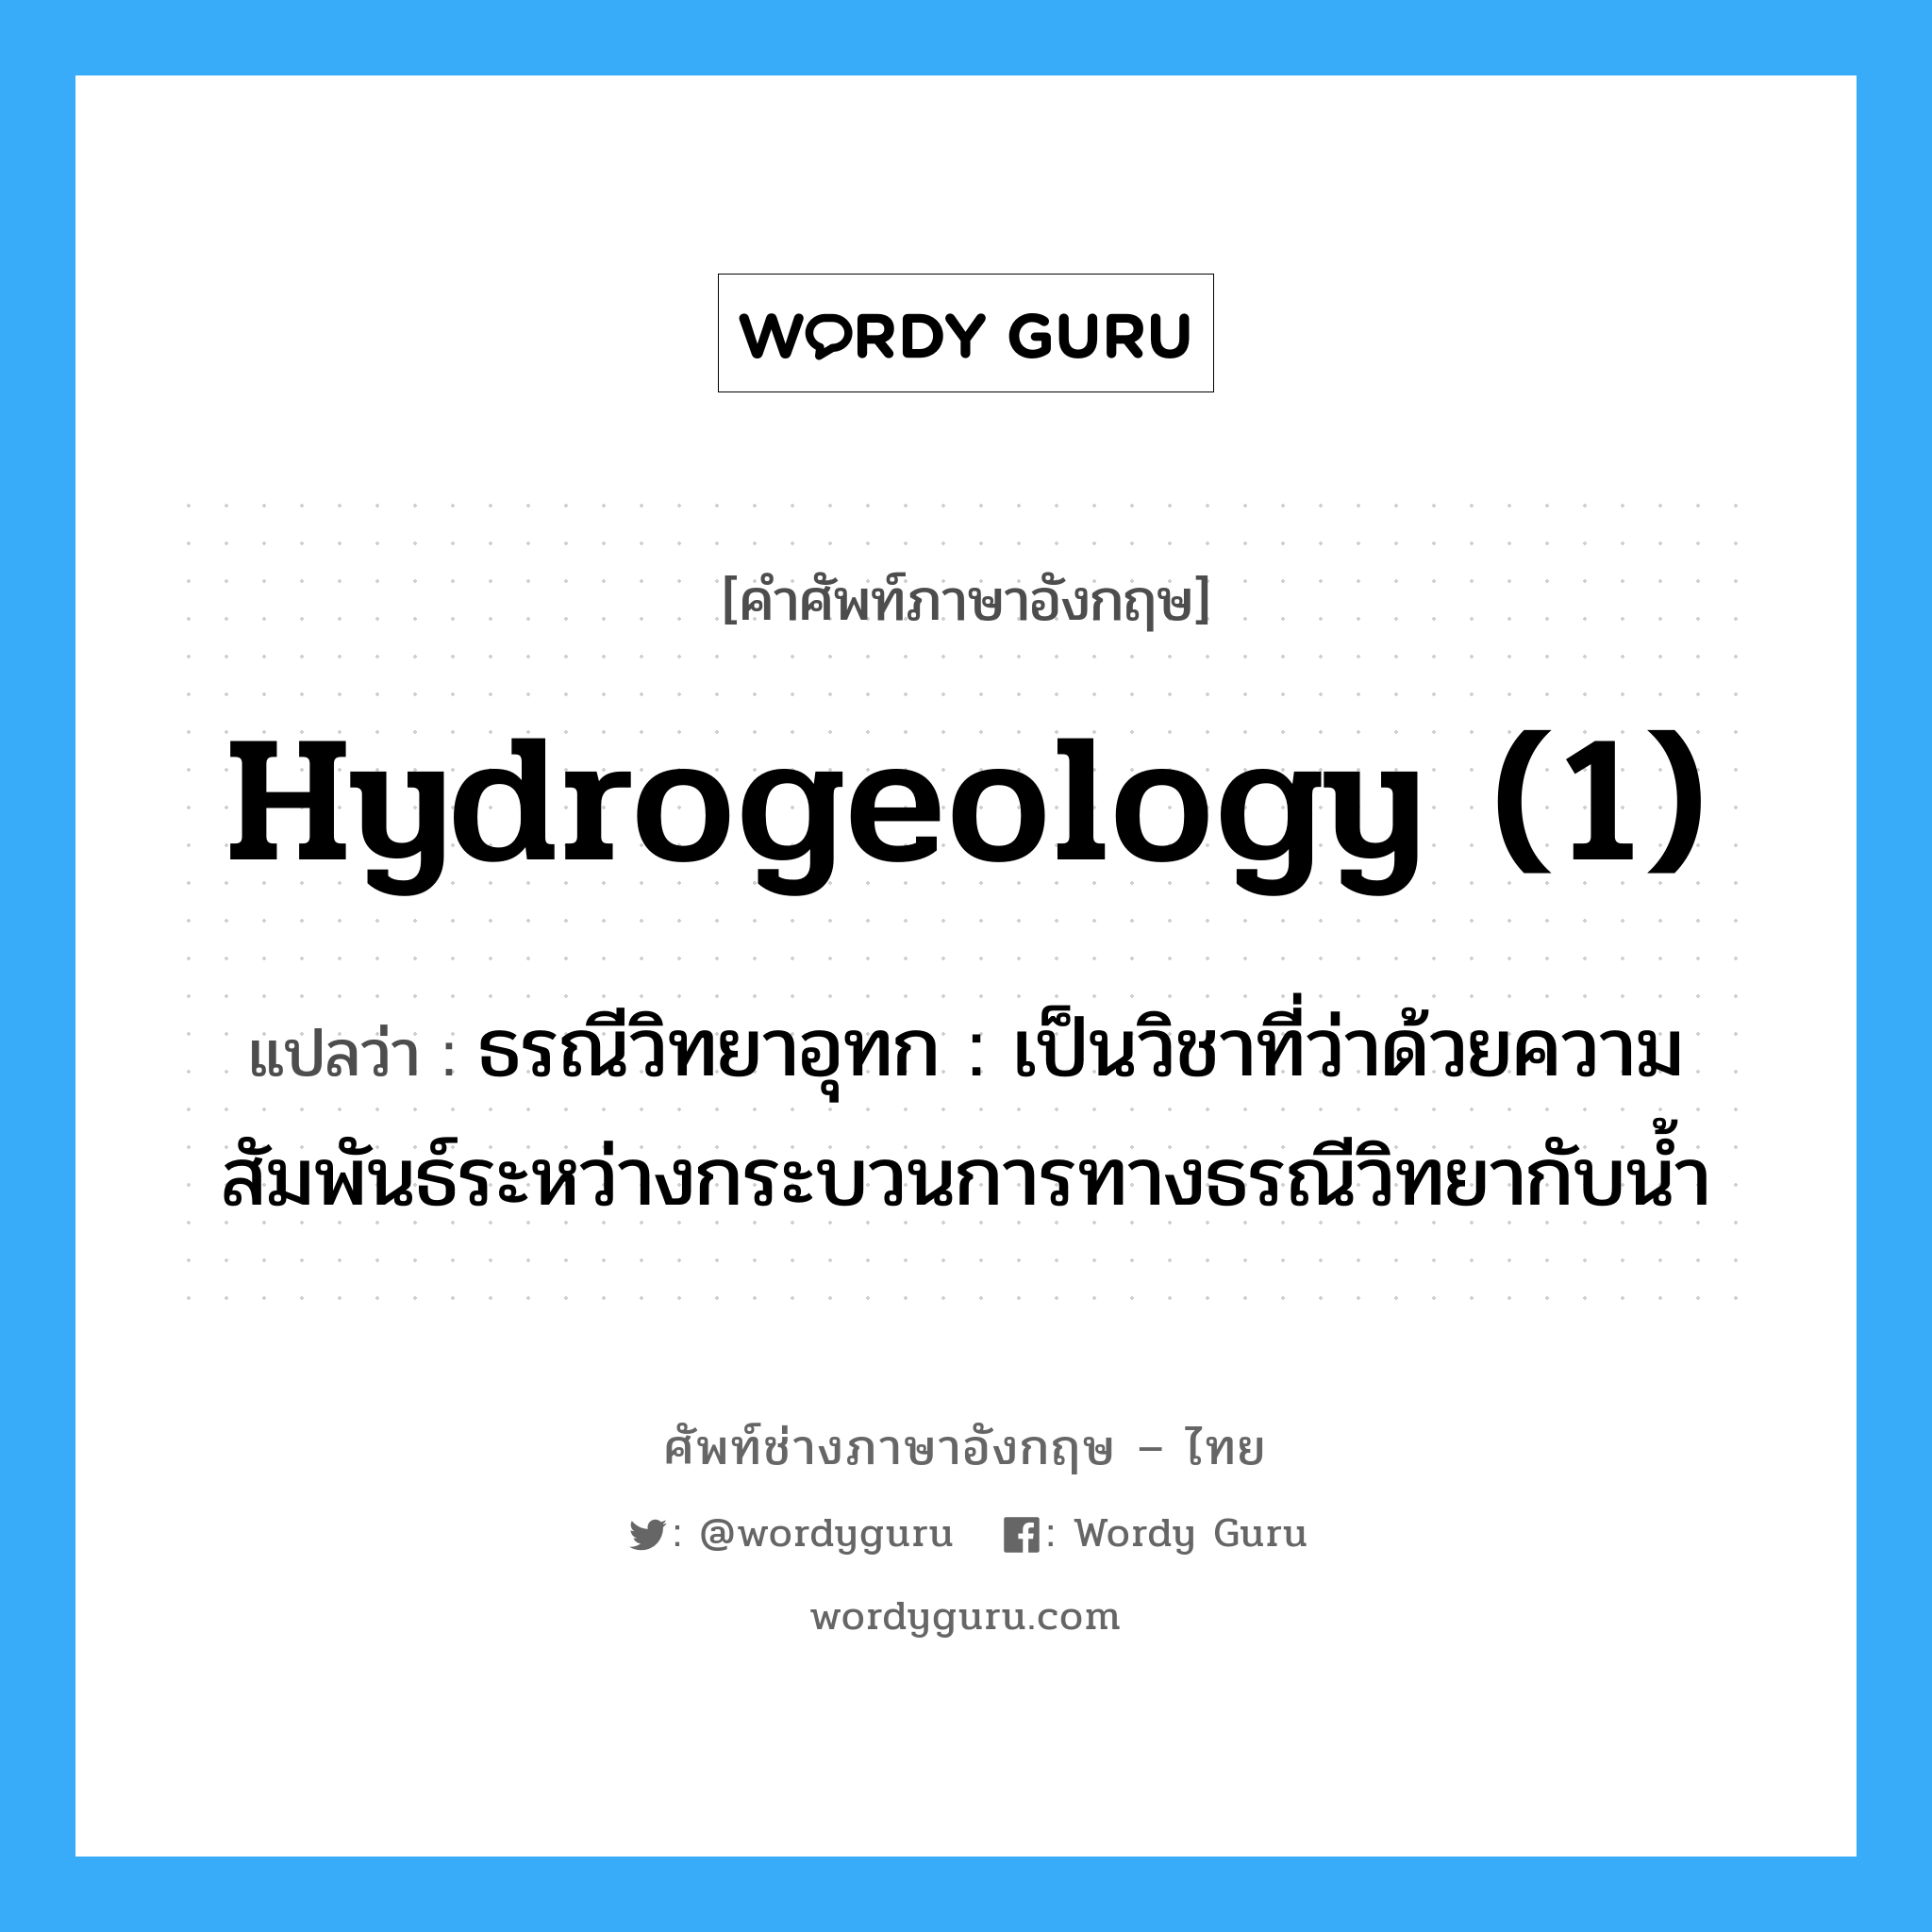 hydrogeology (1) แปลว่า?, คำศัพท์ช่างภาษาอังกฤษ - ไทย hydrogeology (1) คำศัพท์ภาษาอังกฤษ hydrogeology (1) แปลว่า ธรณีวิทยาอุทก : เป็นวิชาที่ว่าด้วยความสัมพันธ์ระหว่างกระบวนการทางธรณีวิทยากับน้ำ